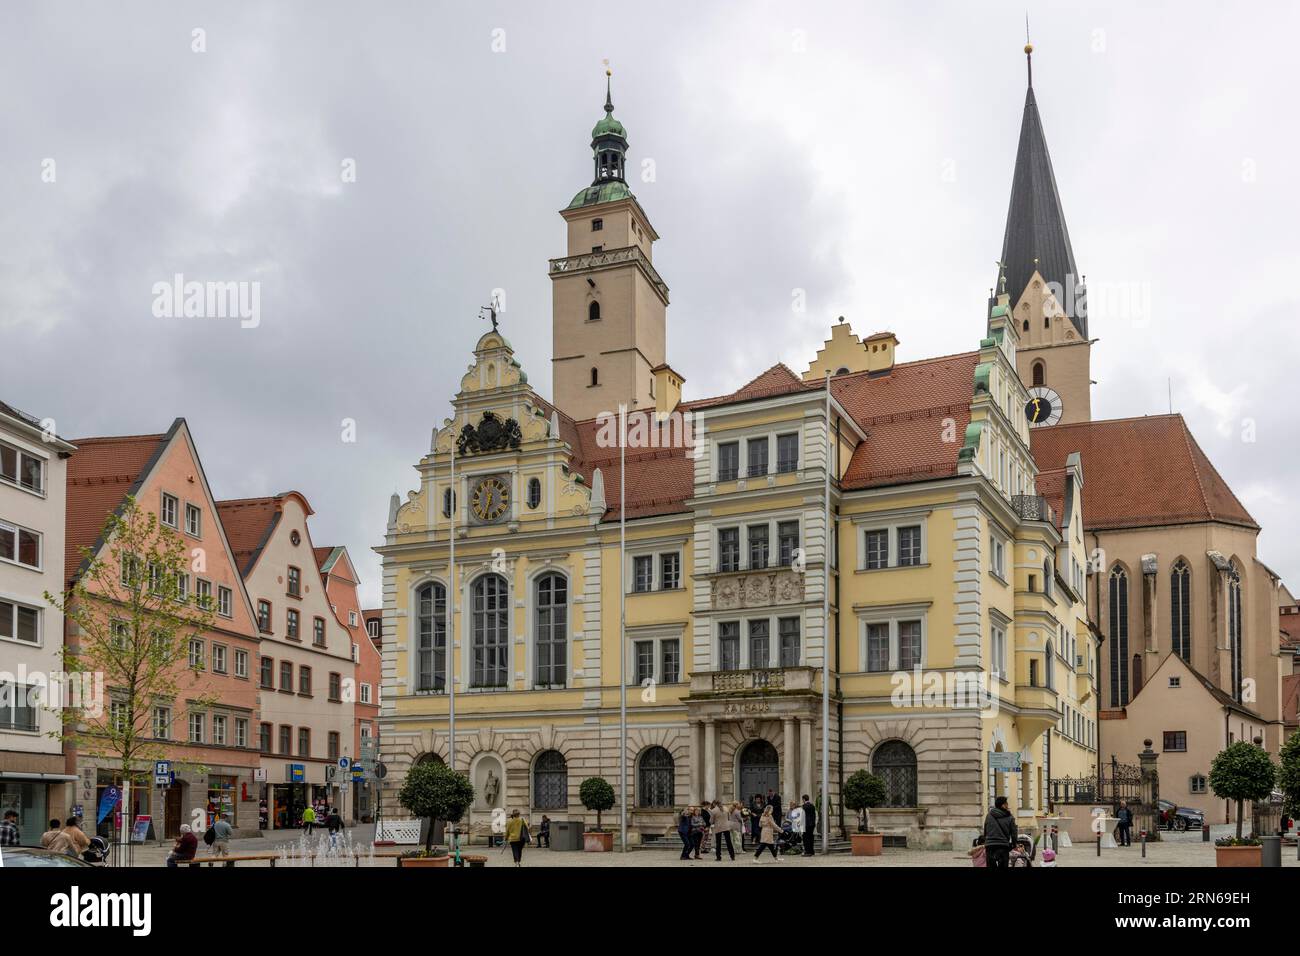 Altes Rathaus mit Pfeifenturm, Turm der Pfarrkirche St. Moritz, Rathausplatz, Ingolstadt, Oberbayern, Bayern, Deutschland Stockfoto